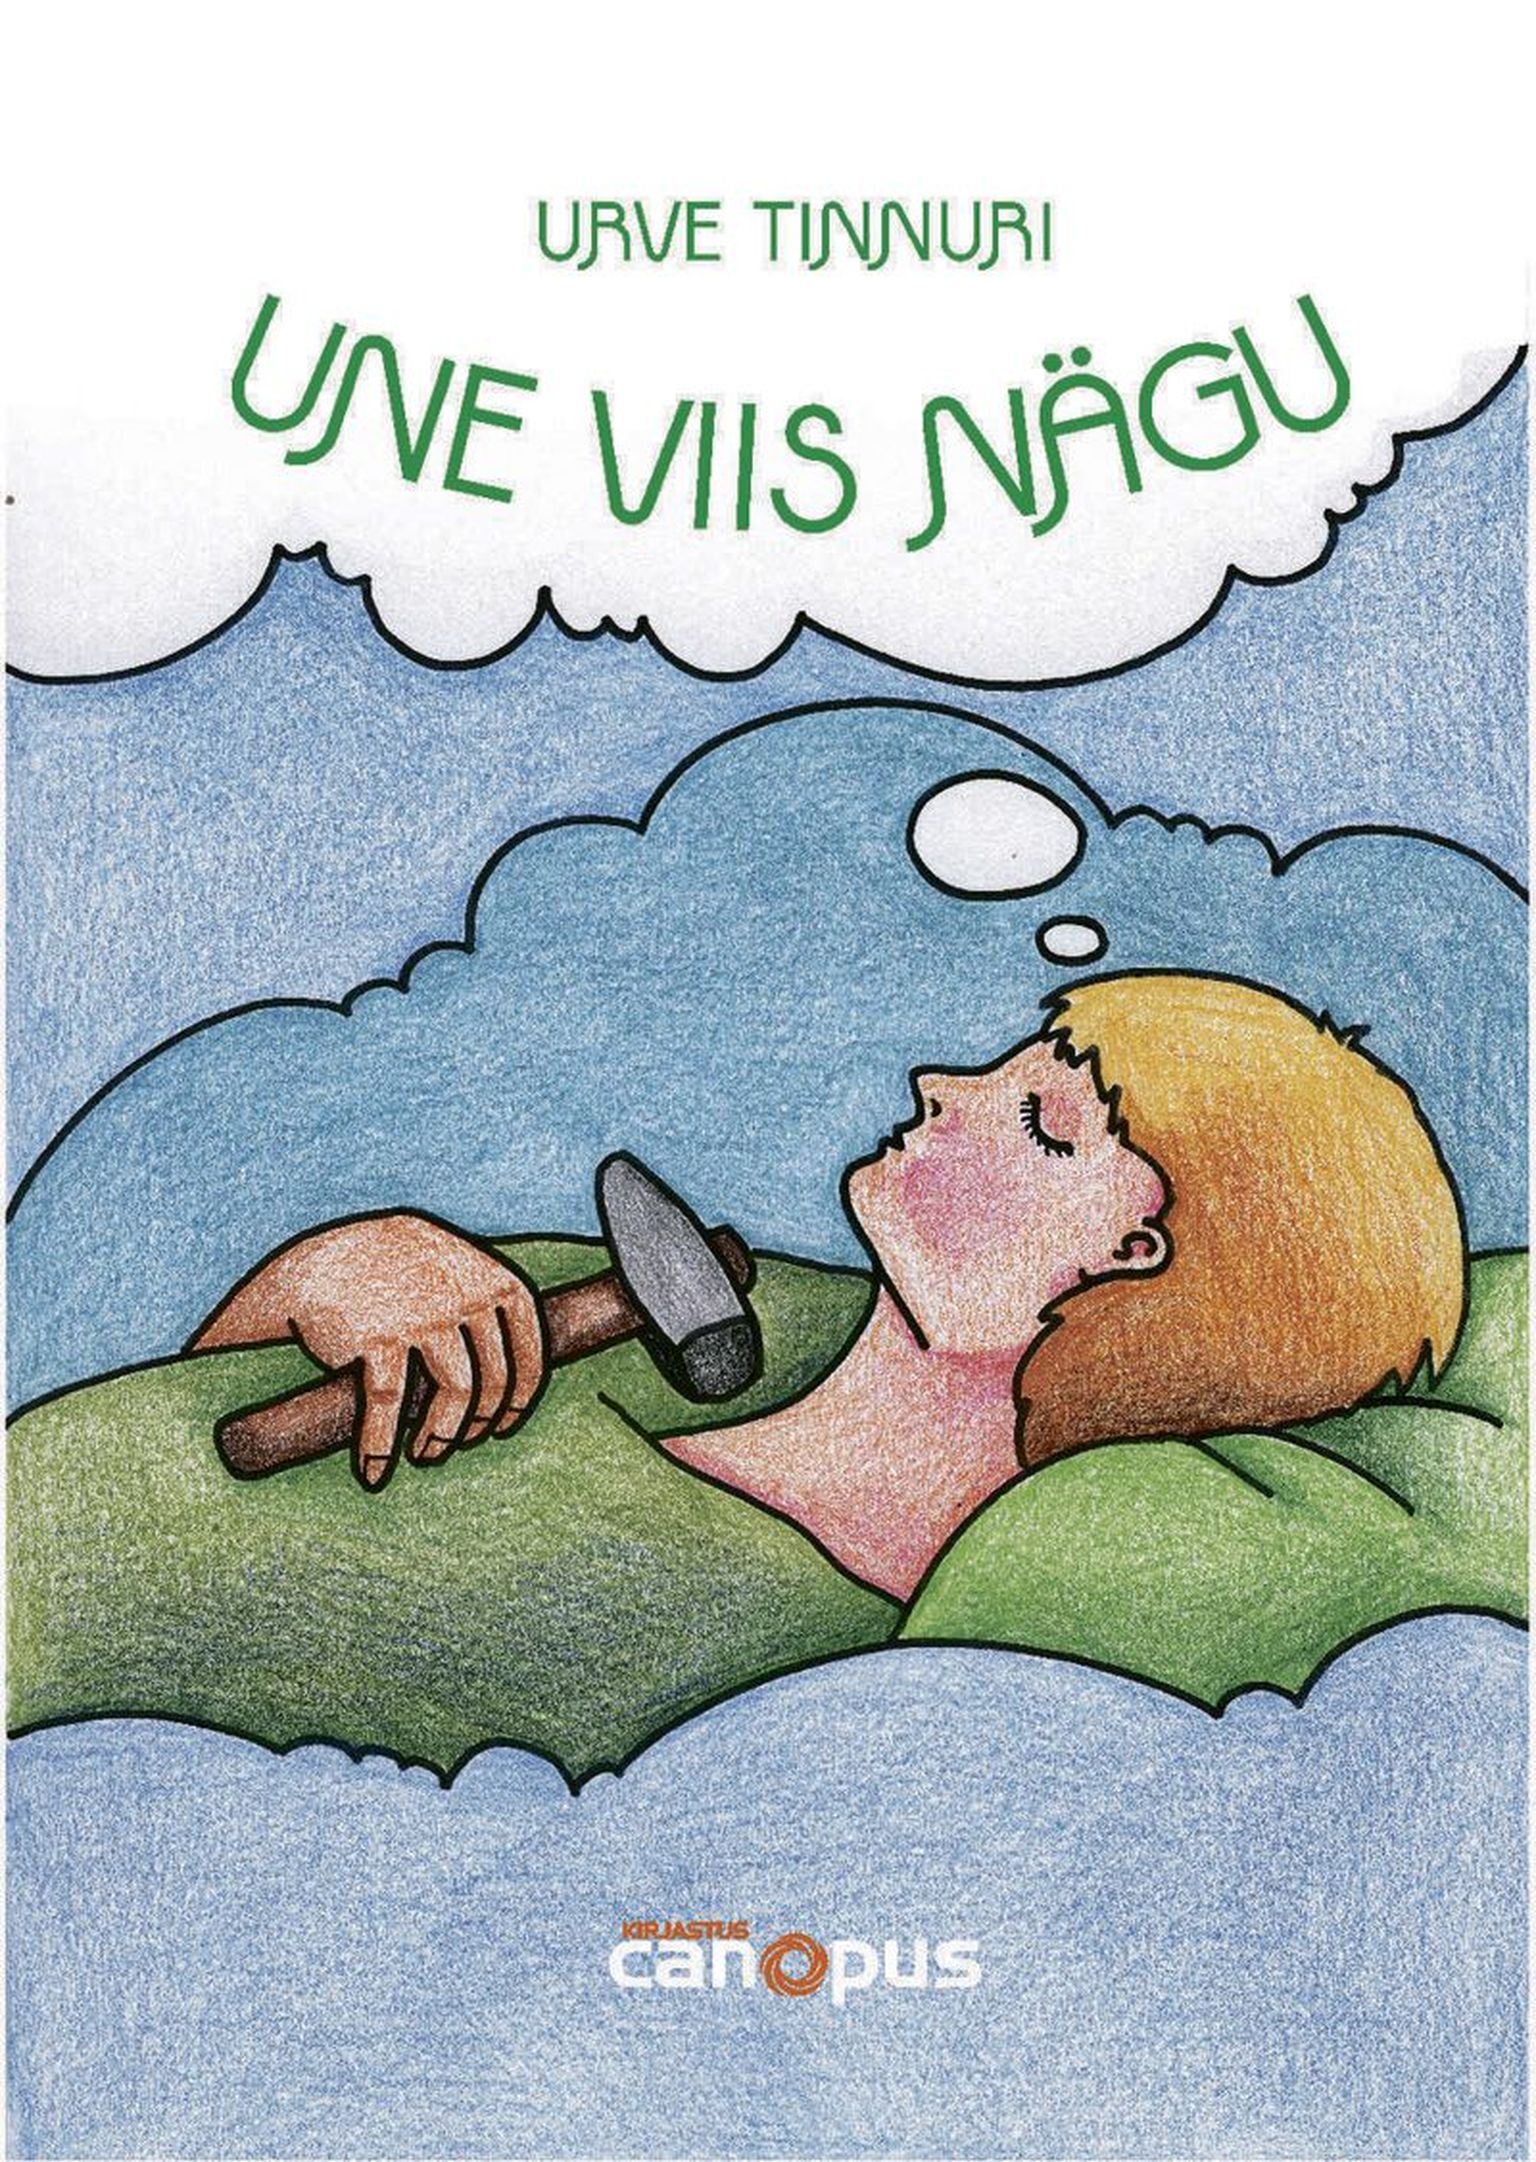 Urve Tinnuri uus raamat “Une viis nägu”.